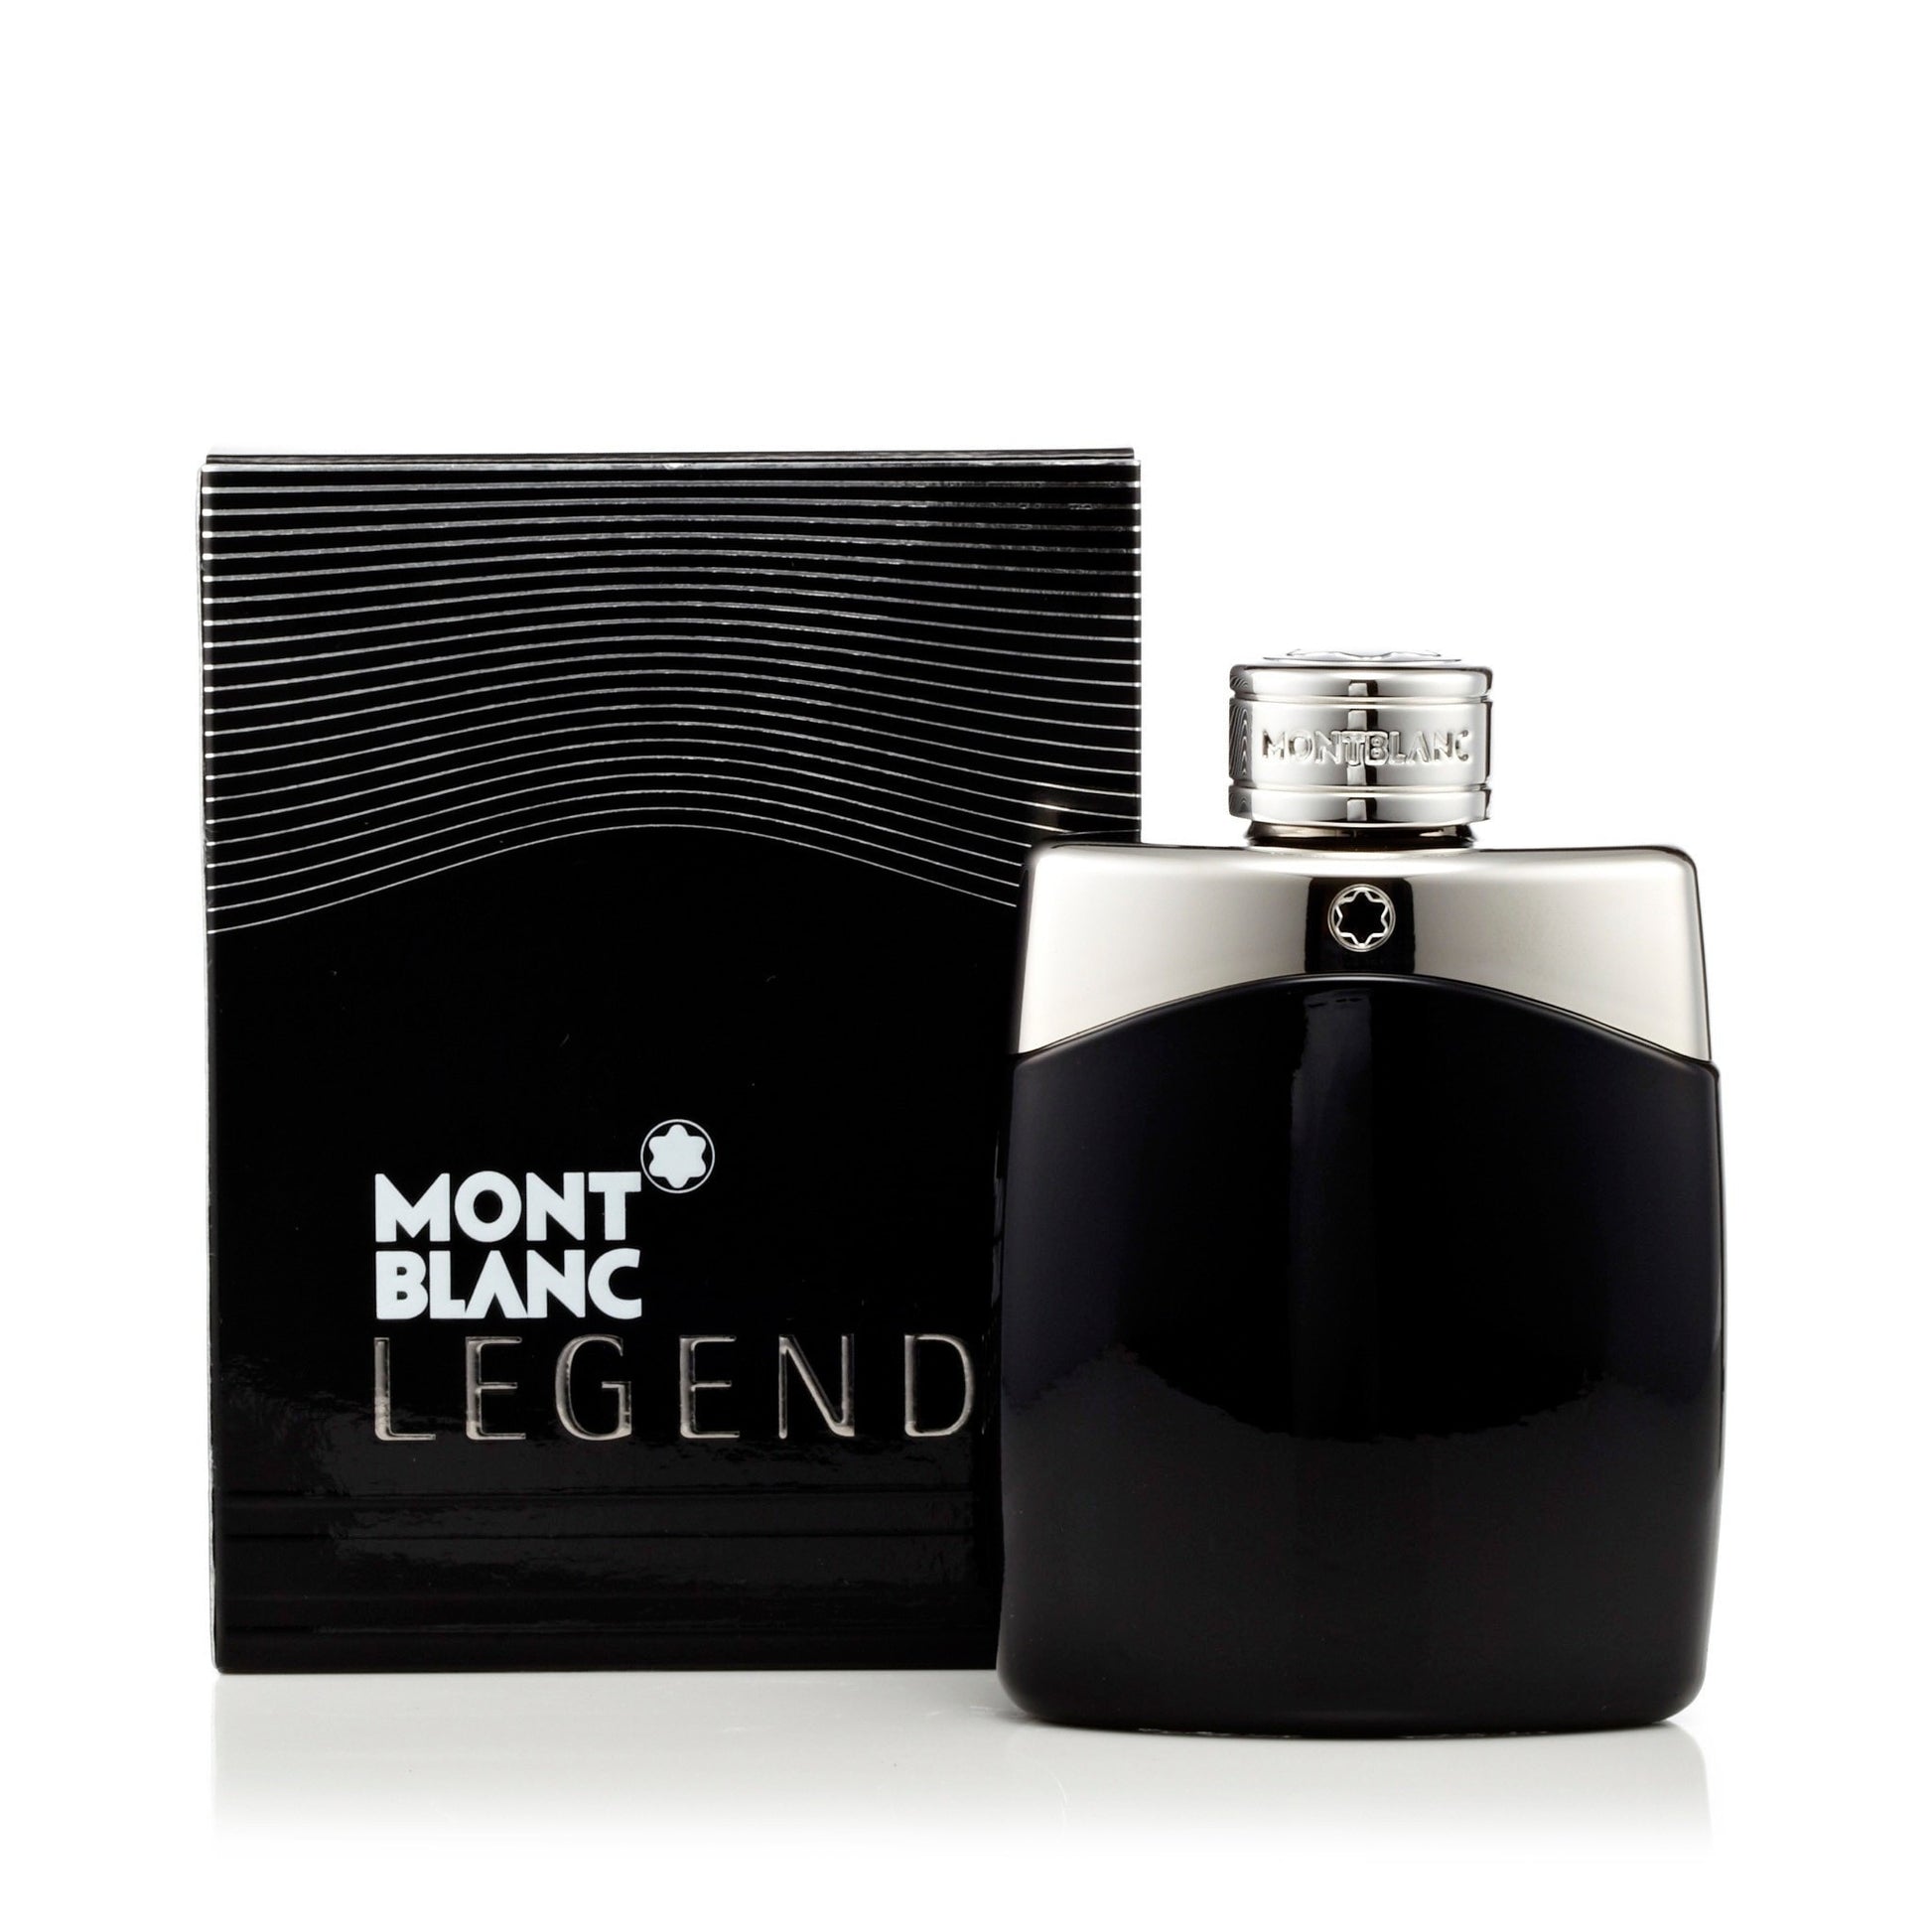 Mont Blanc - Montblanc Legend Eau de Toilette Spray 6.7 oz for Men